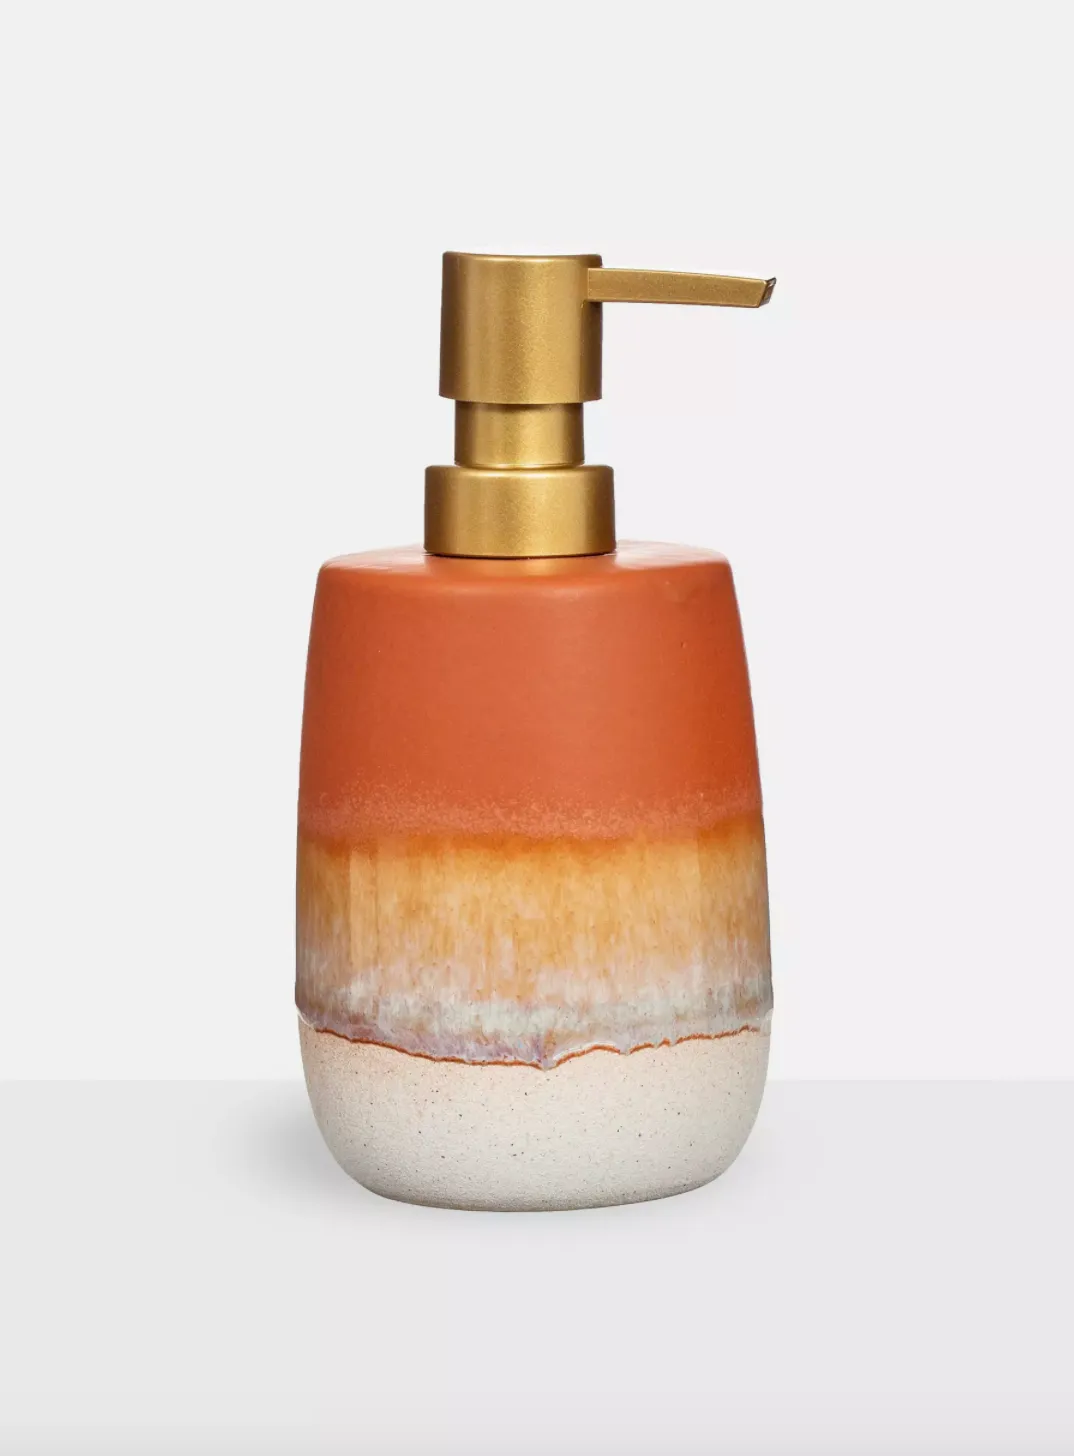 Sass & Belle Terracotta Glazed Effect Soap Dispenser, £12